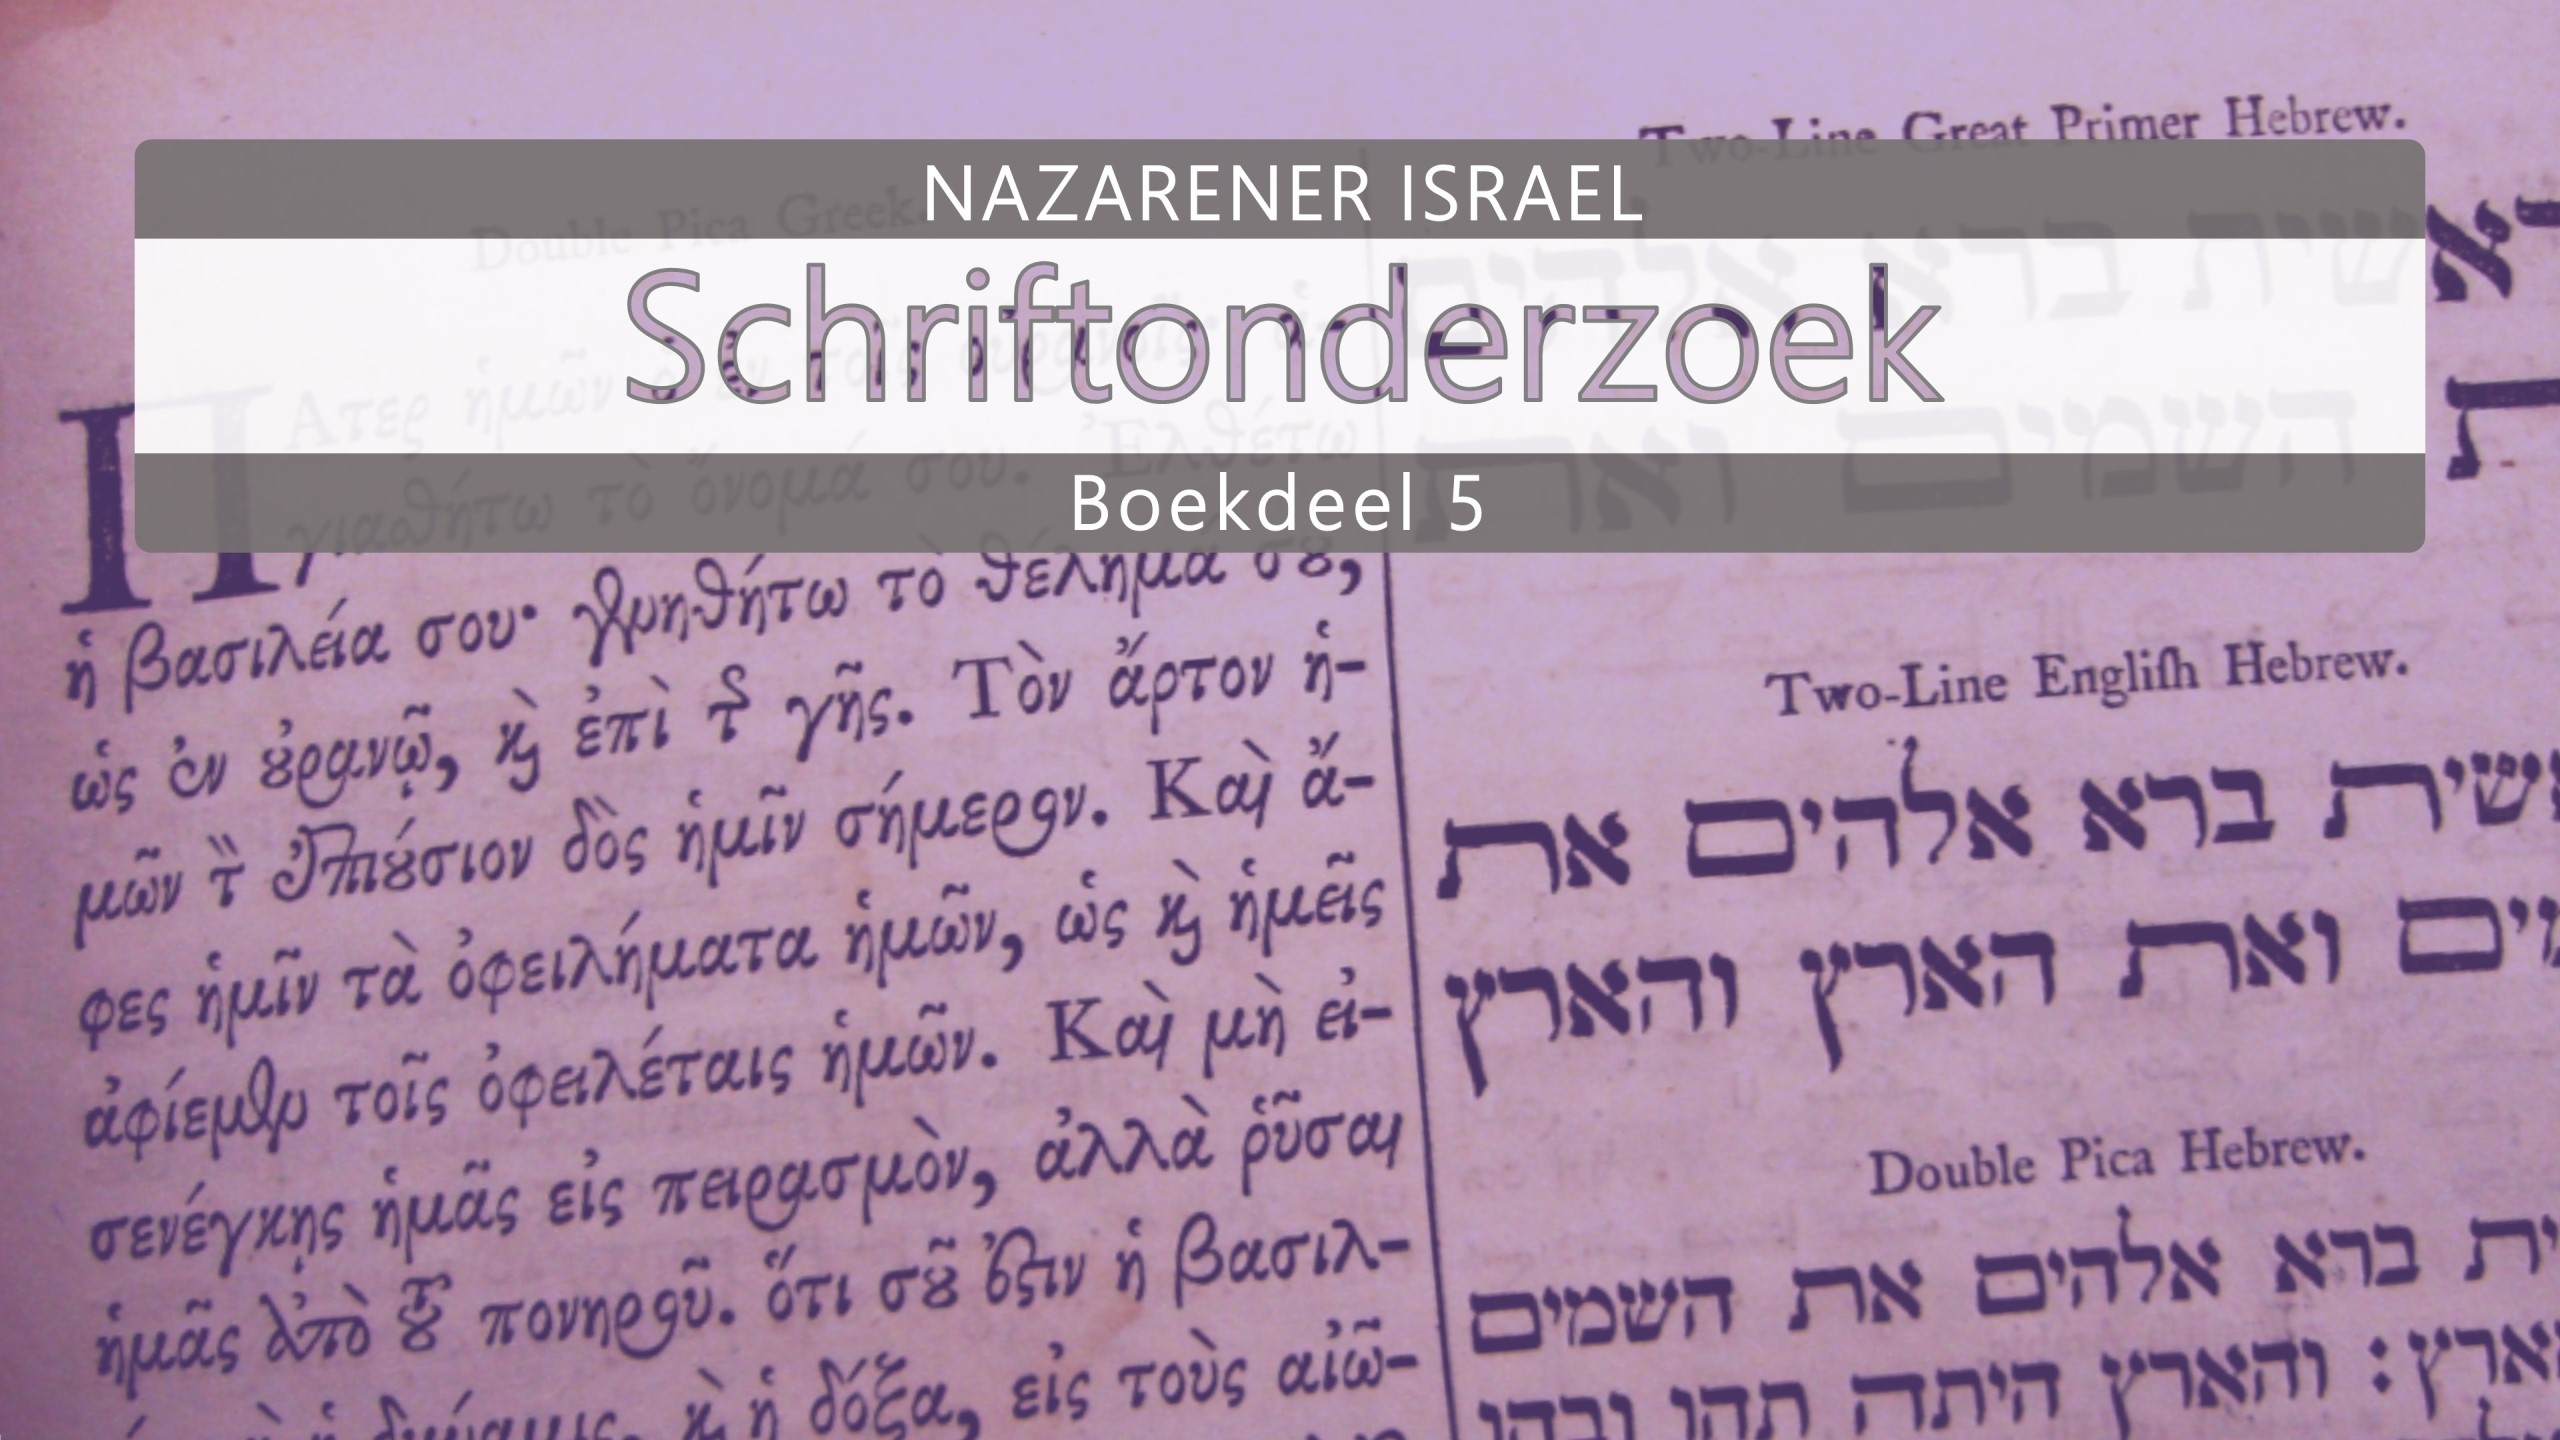 Nazarener Schriftonderzoek Boekdeel 5